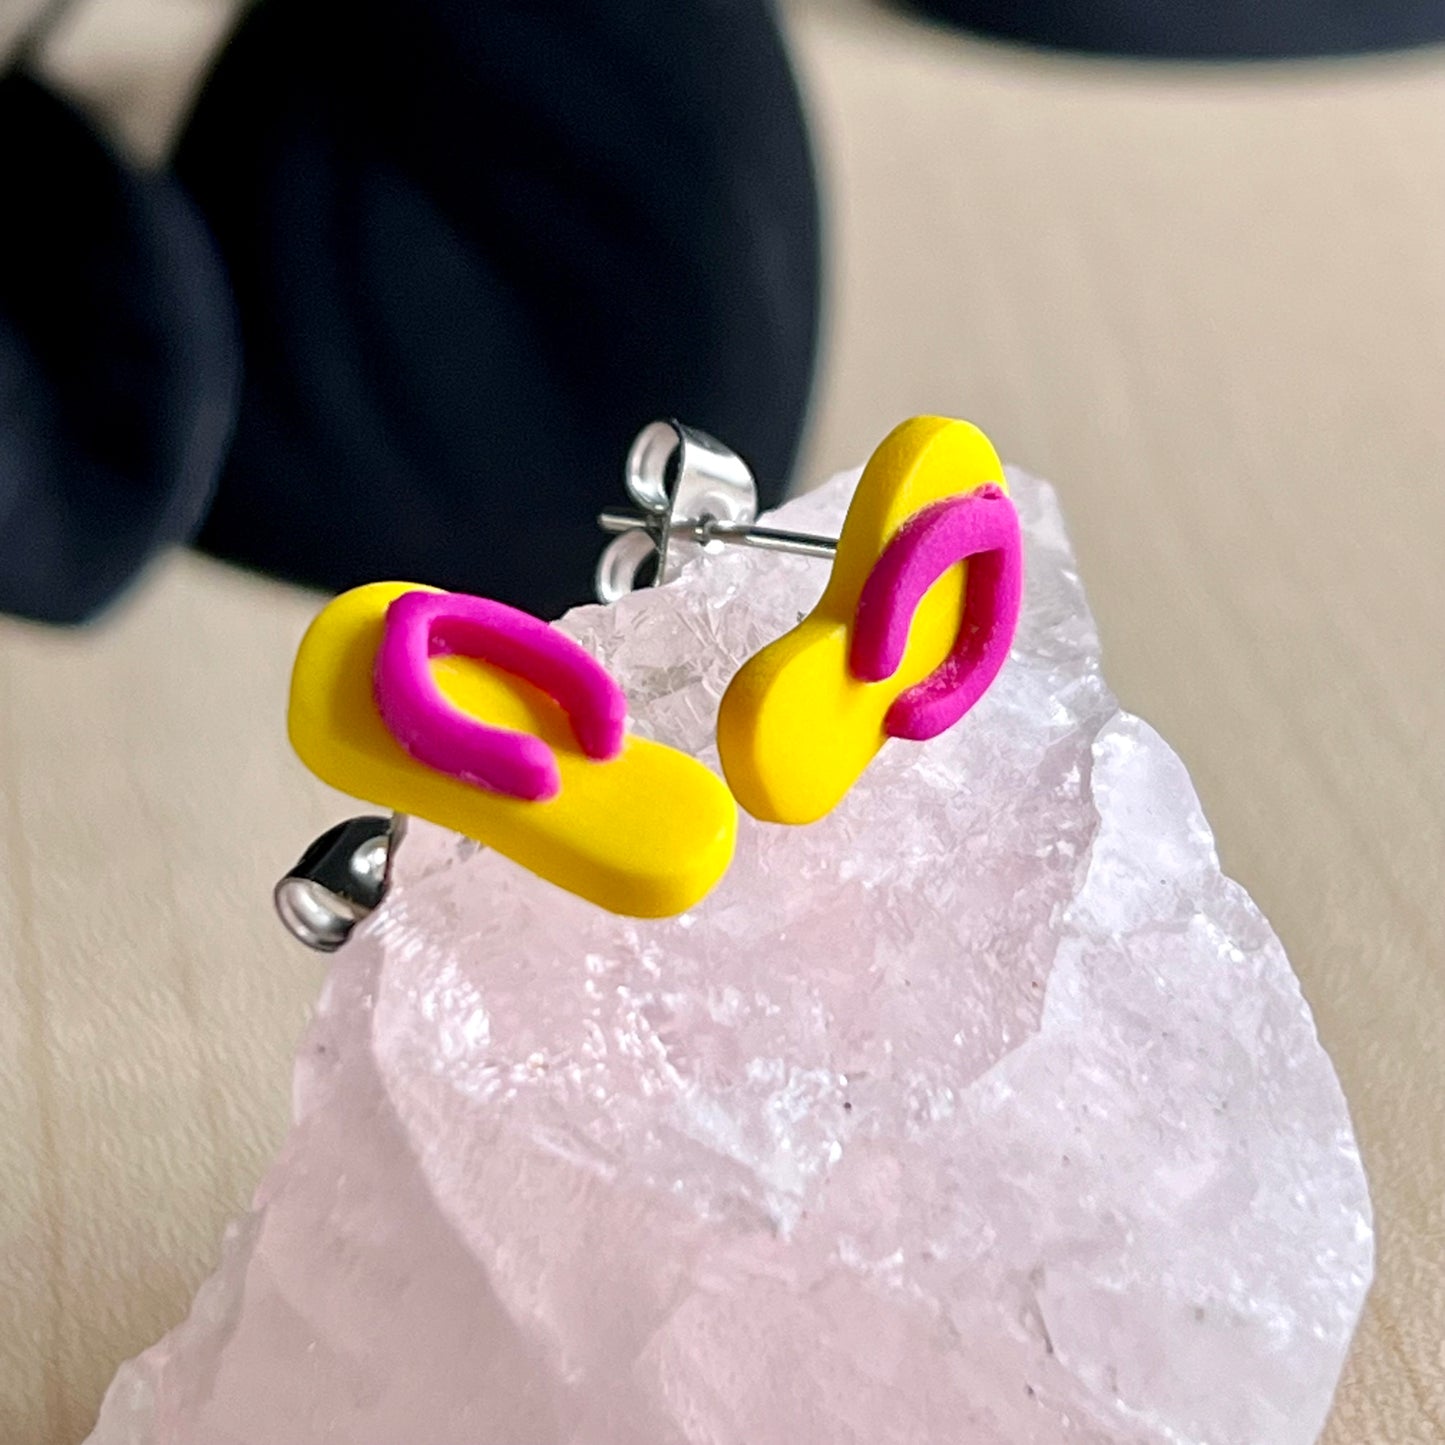 Thongs / flip flops studs, Yellow with dark pink, handmade earrings